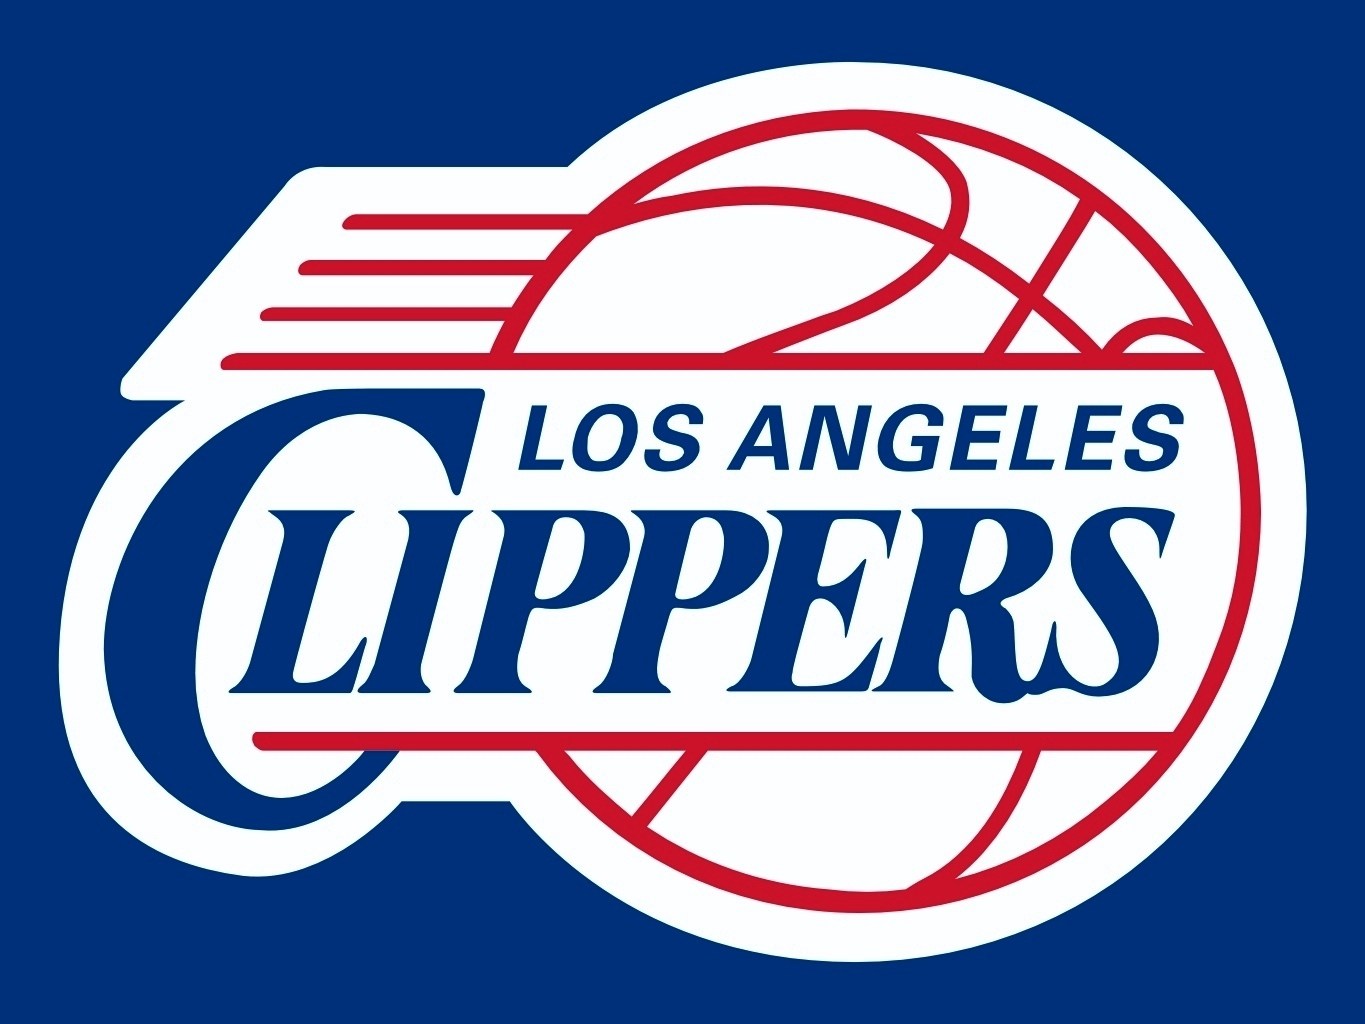 La Clippers Logo 2019 - HD Wallpaper 